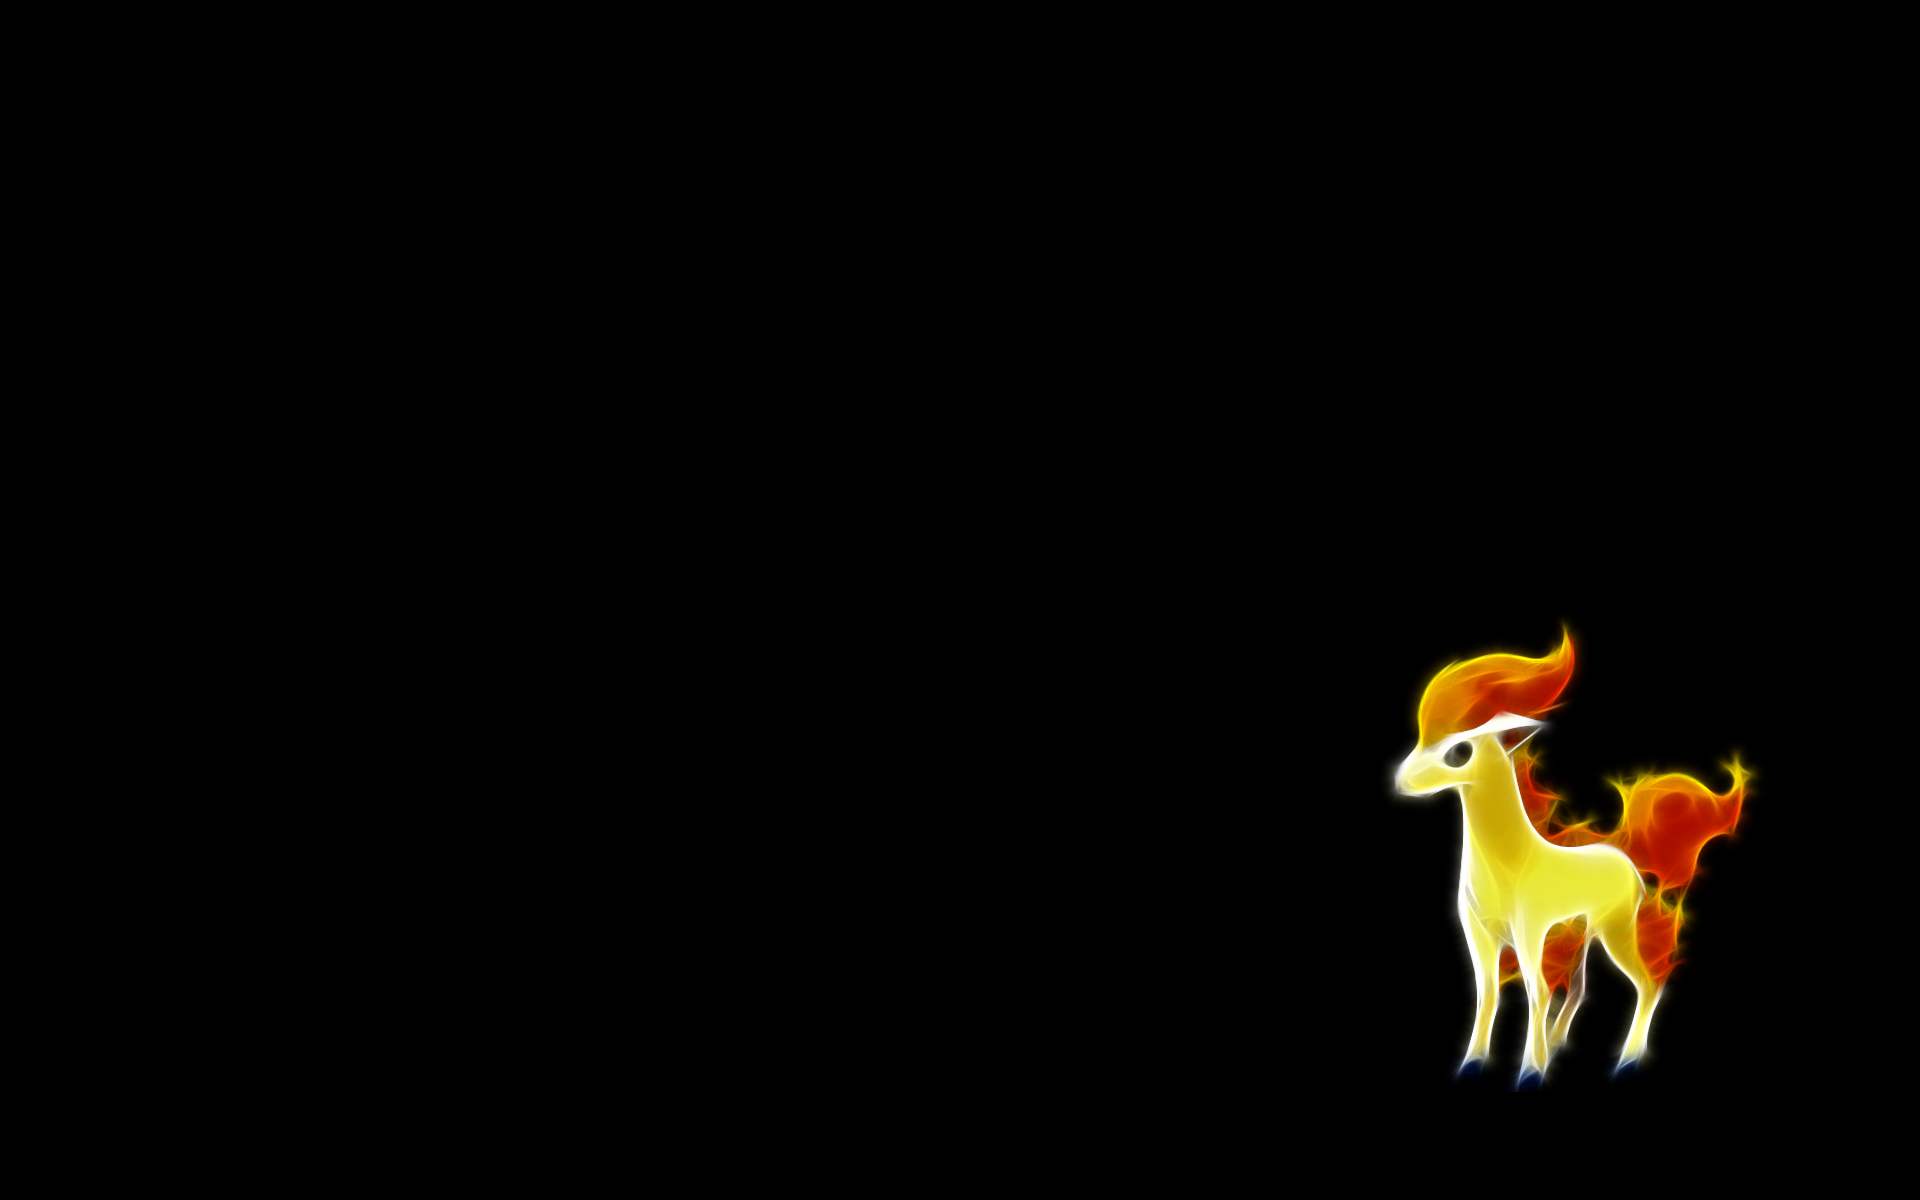 Ponyta Pokemon Wallpaper